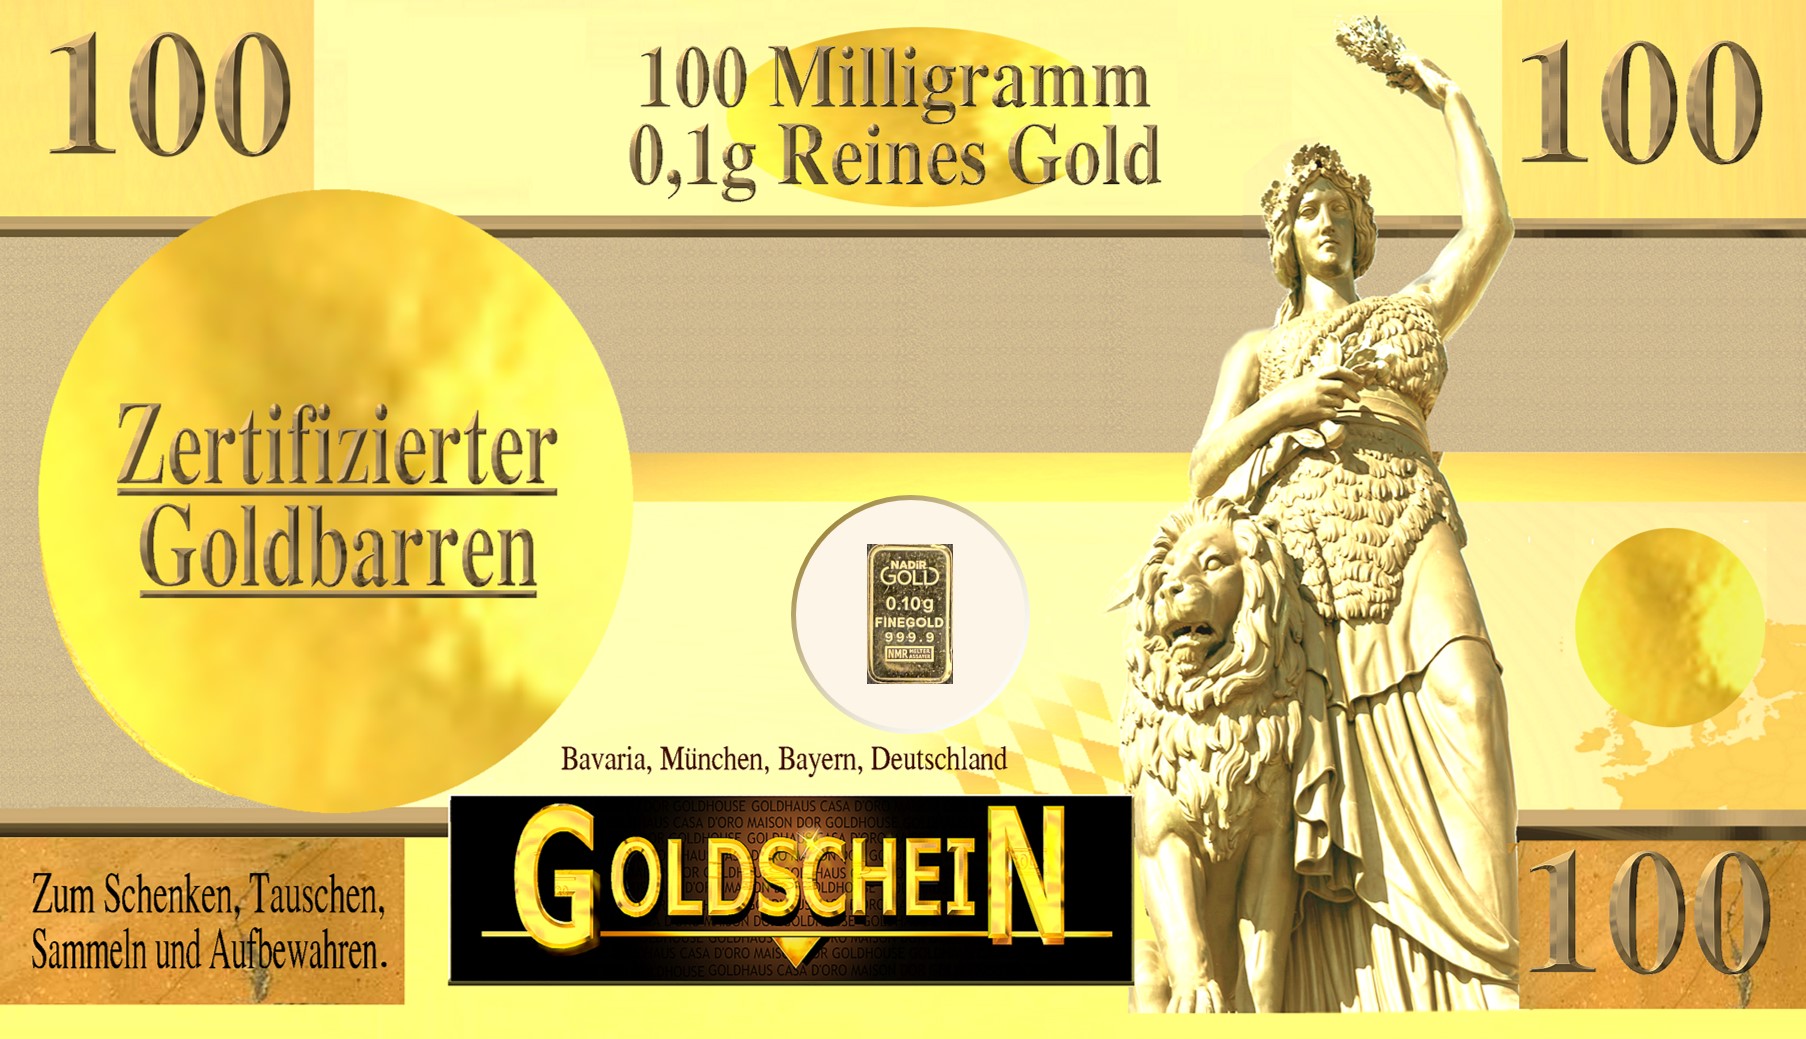 goldschein-01-g-bavaria.jpeg